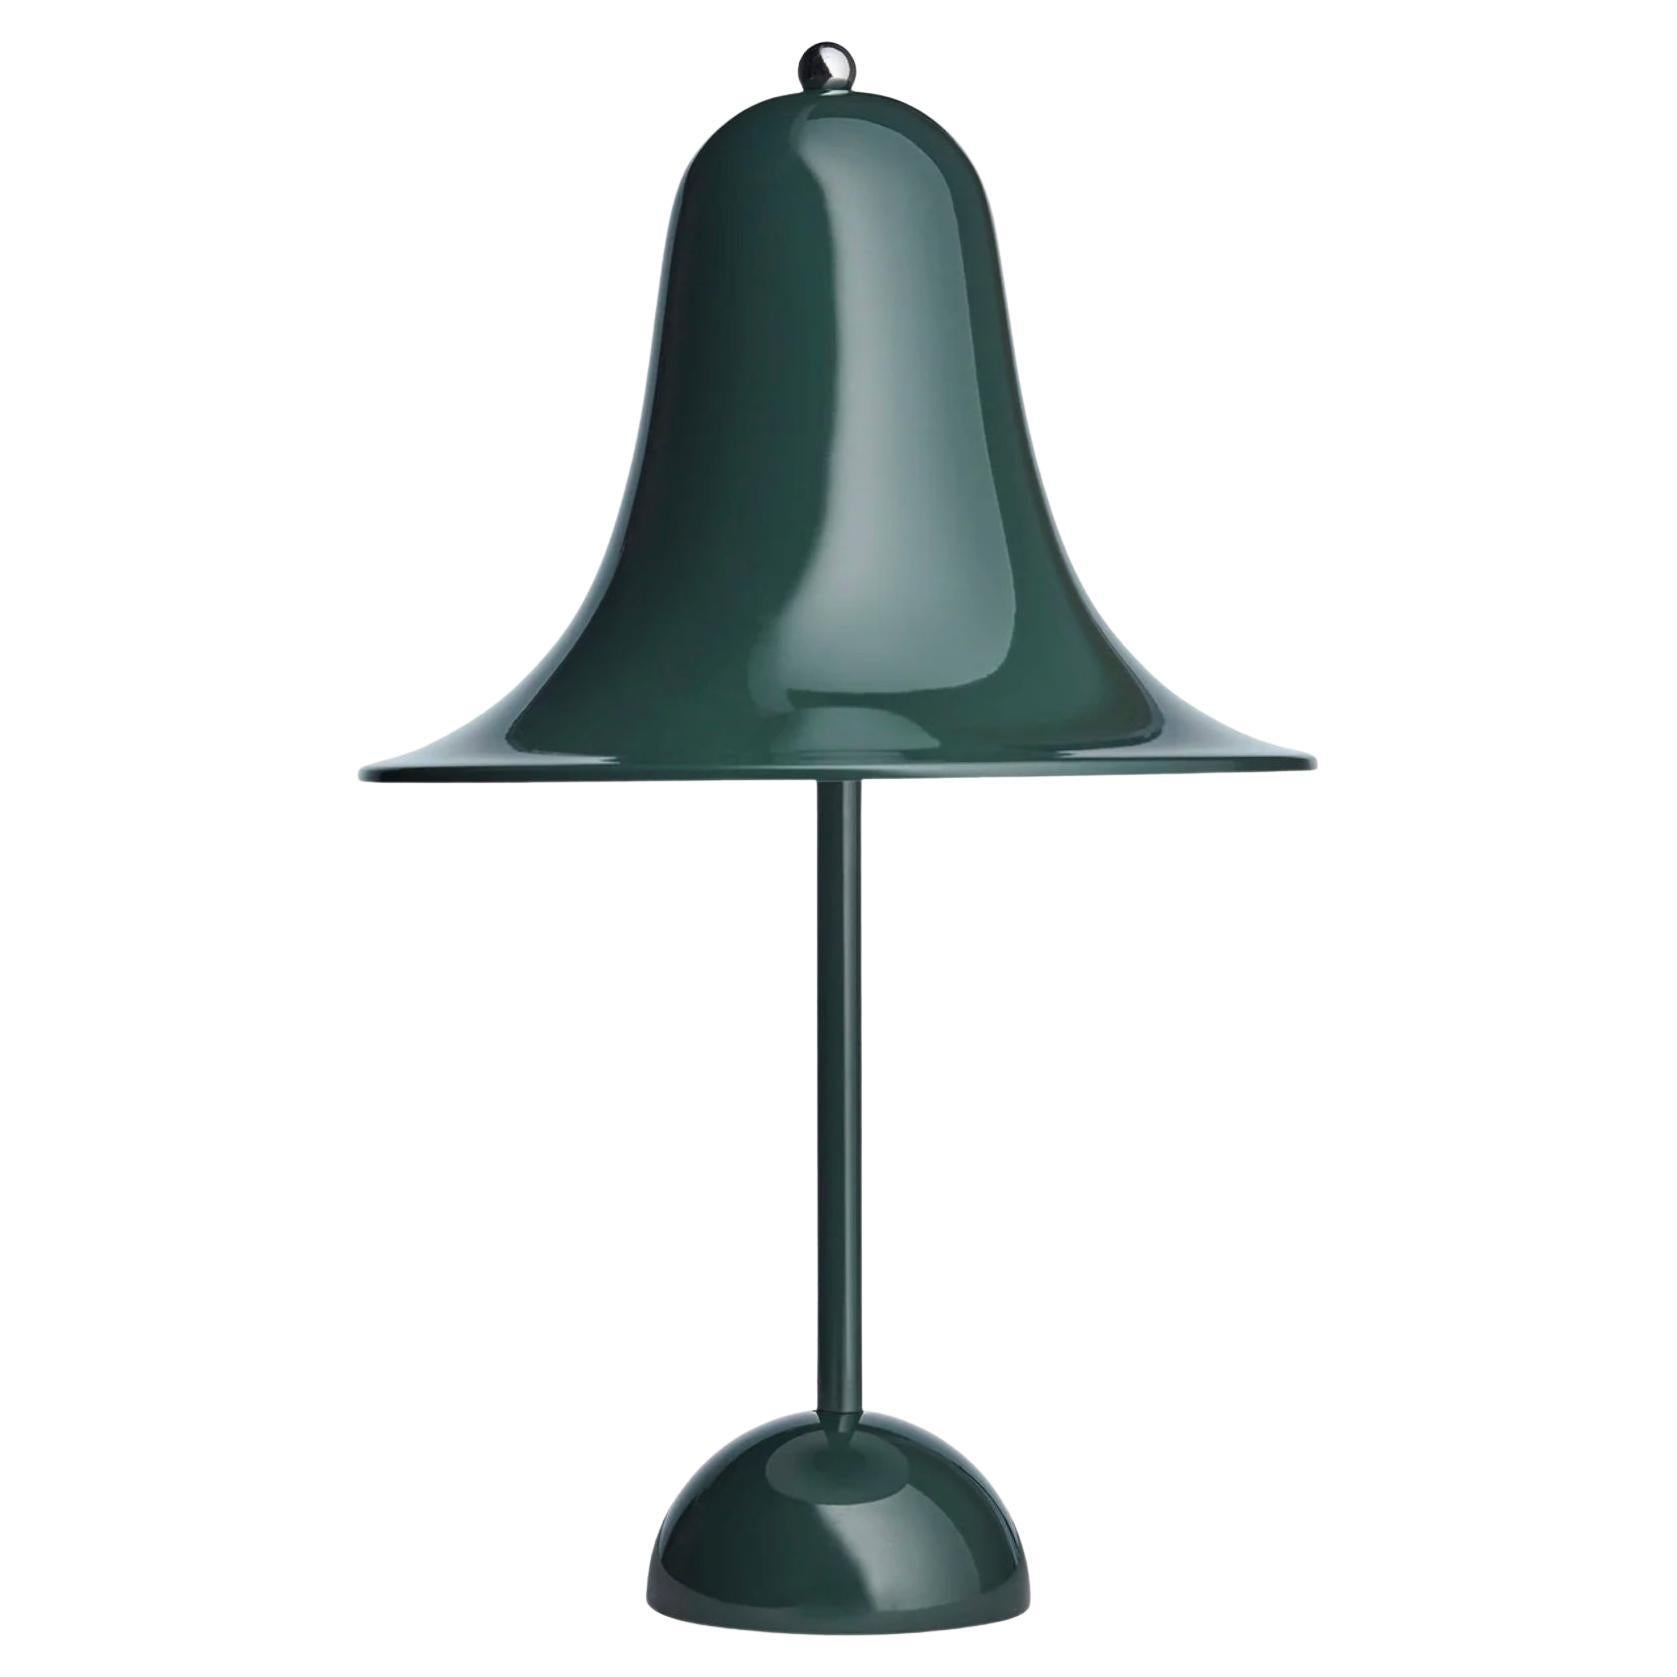 Verner Panton 'Pantop' Table Lamp in 'Dark Green' 1980 for Verpan For Sale